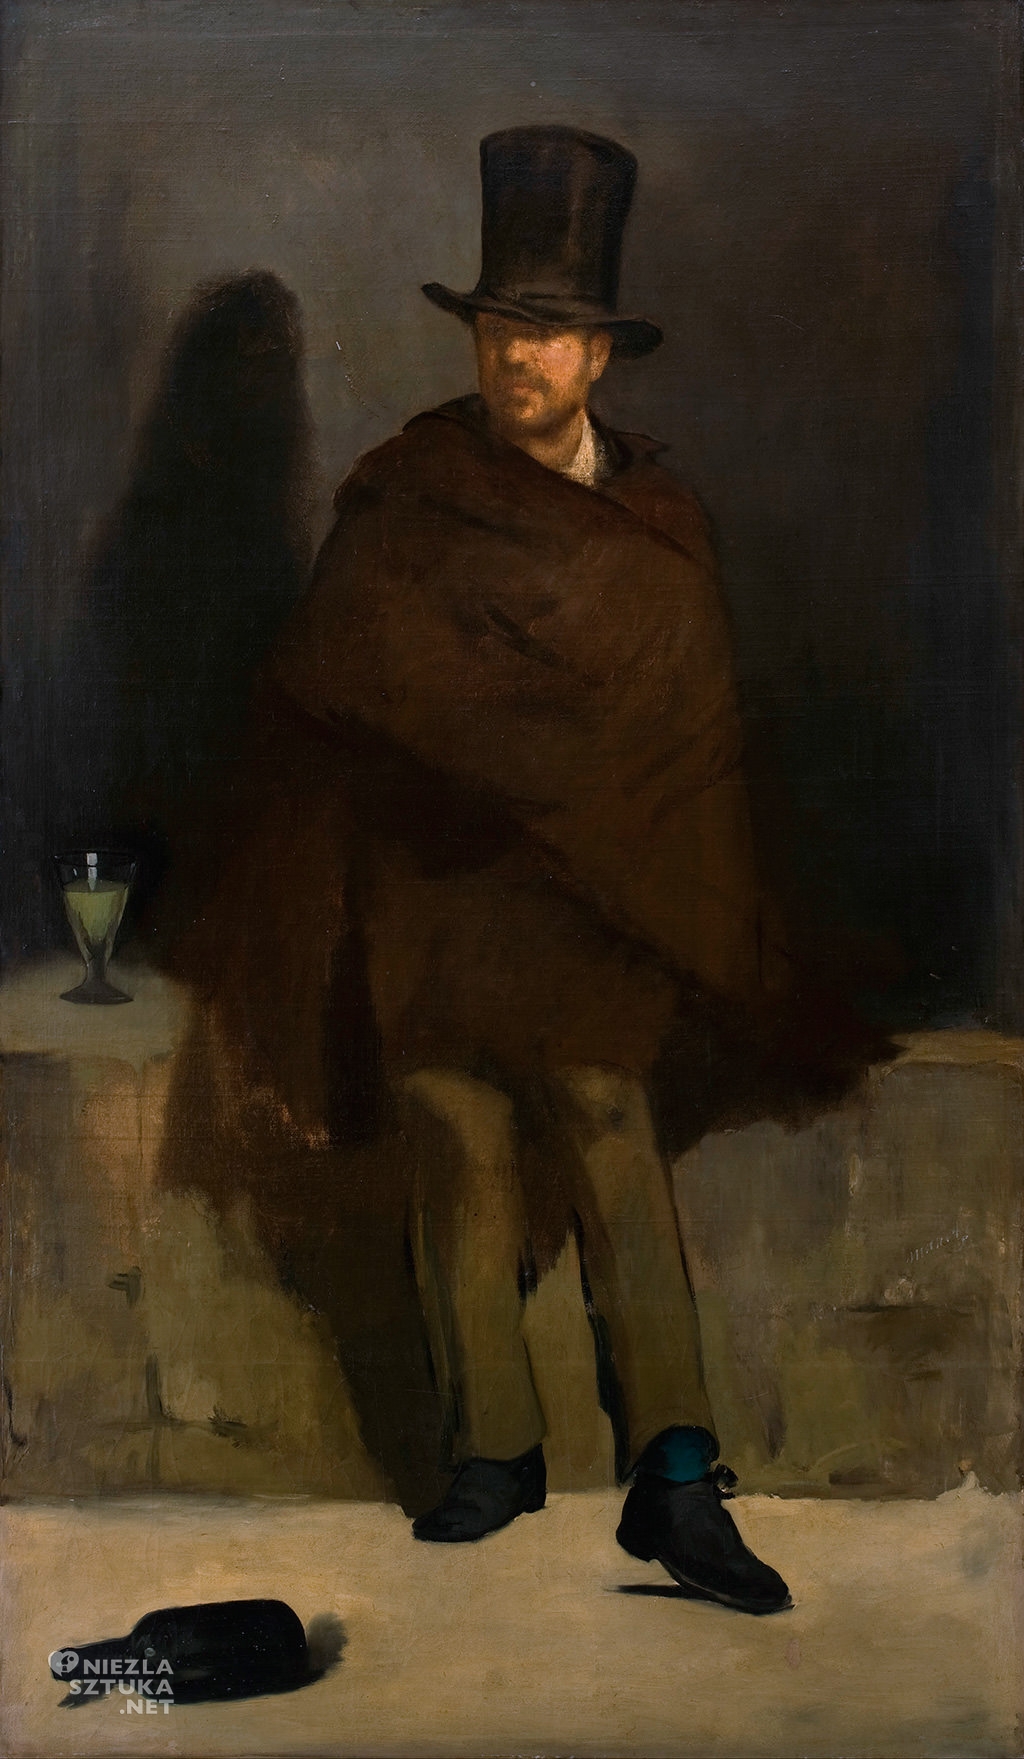 Édouard Manet, Pijący absynt |1859, olej, płótno, Ny Carlsberg Glyptotek w Kopenhadze